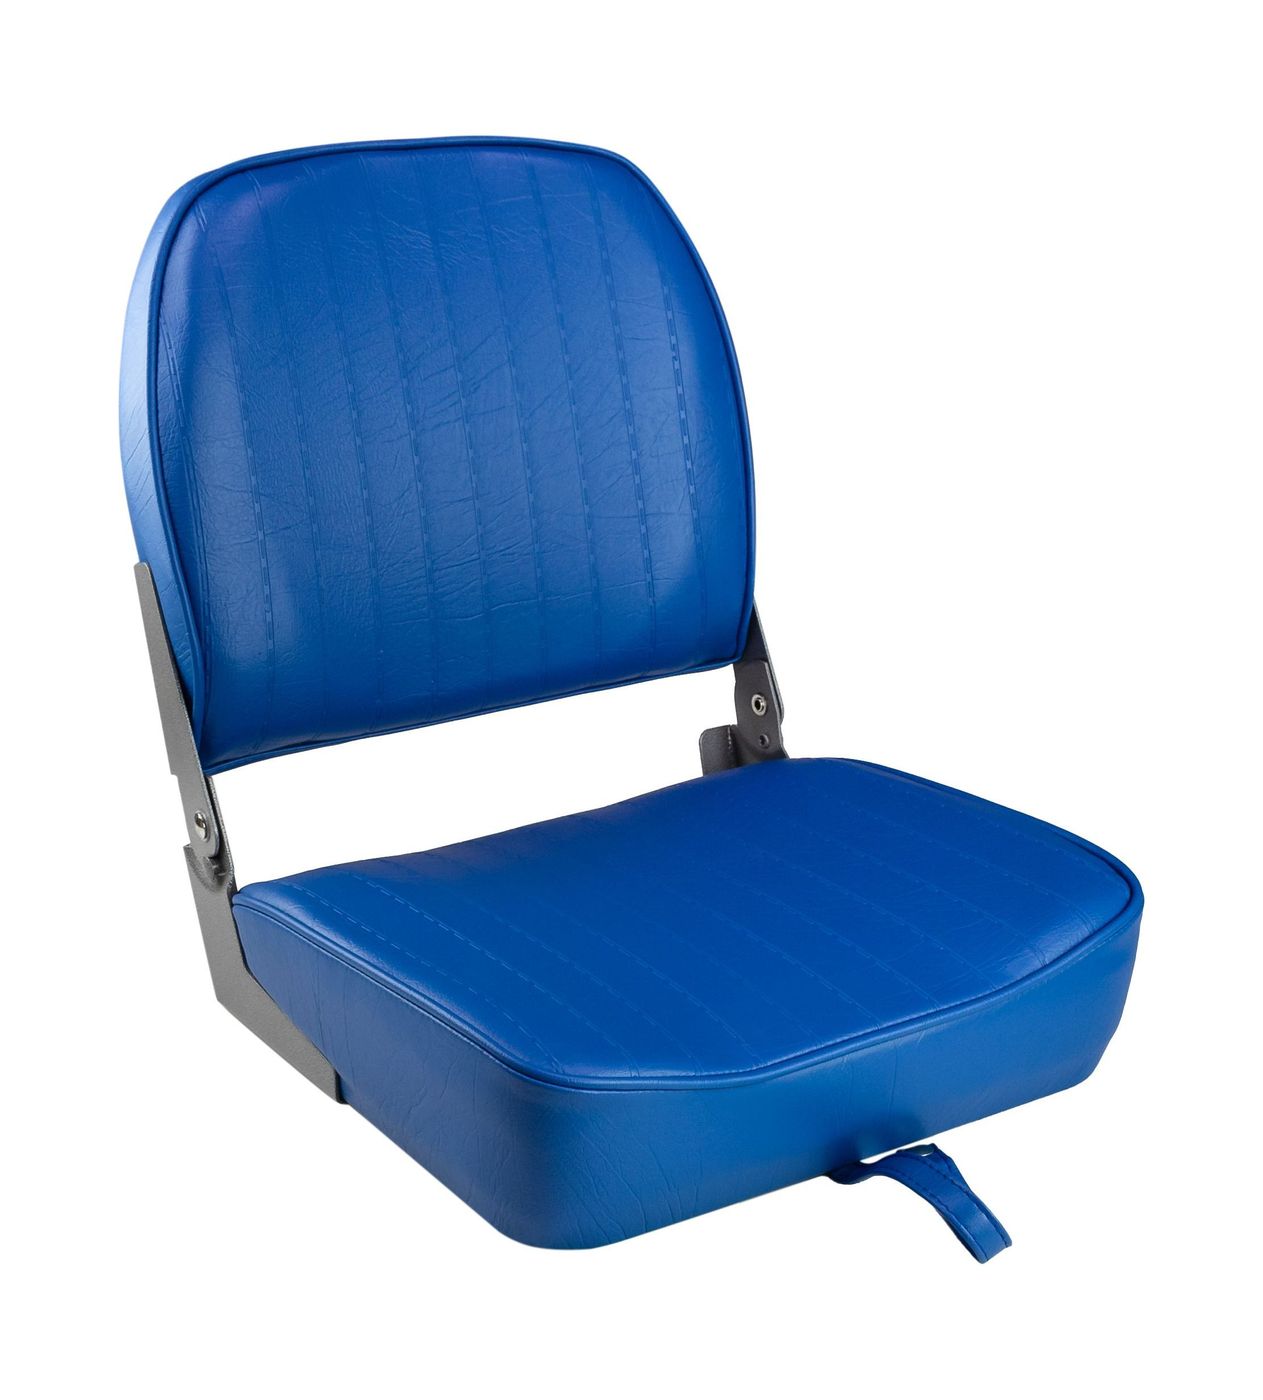 Кресло складное мягкое ECONOMY с низкой спинкой, цвет синий 1040621 кресло мягкое складное обивка винил синий marine rocket 75103b mr